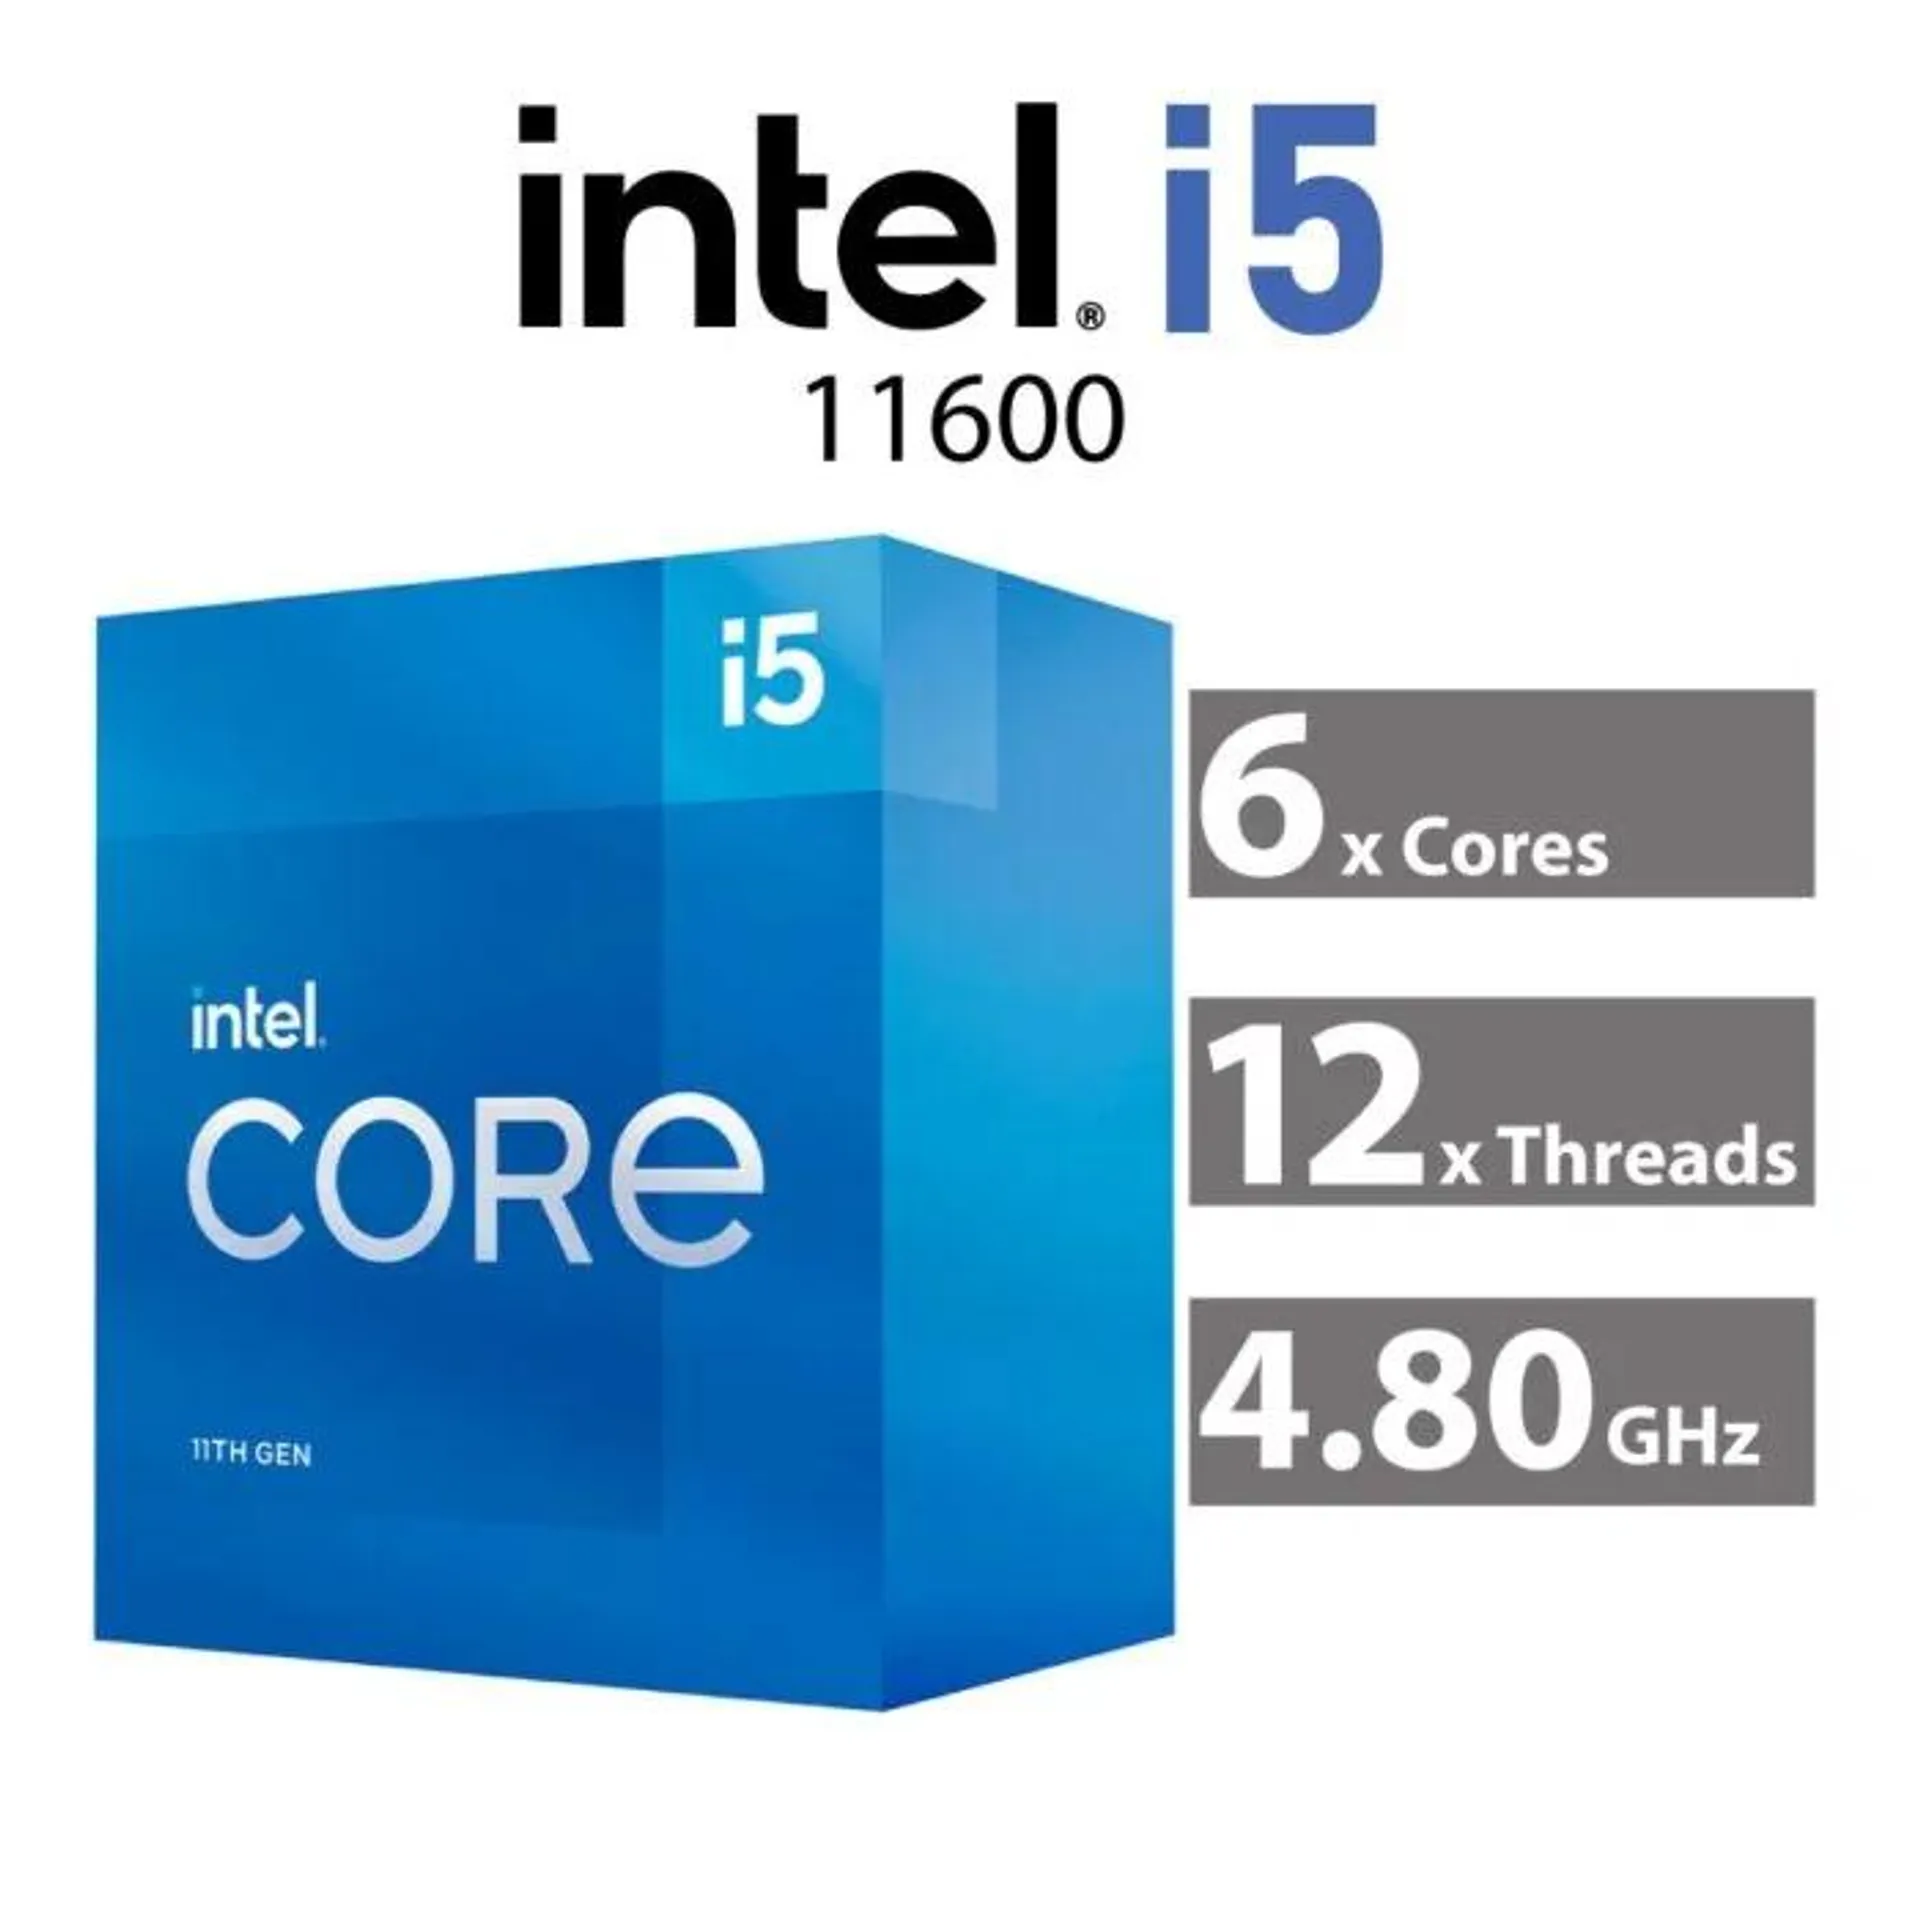 Intel Core i5-11600 Rocket Lake 6-Core 2.80GHz LGA1200 65W BX8070811600 Desktop Processor